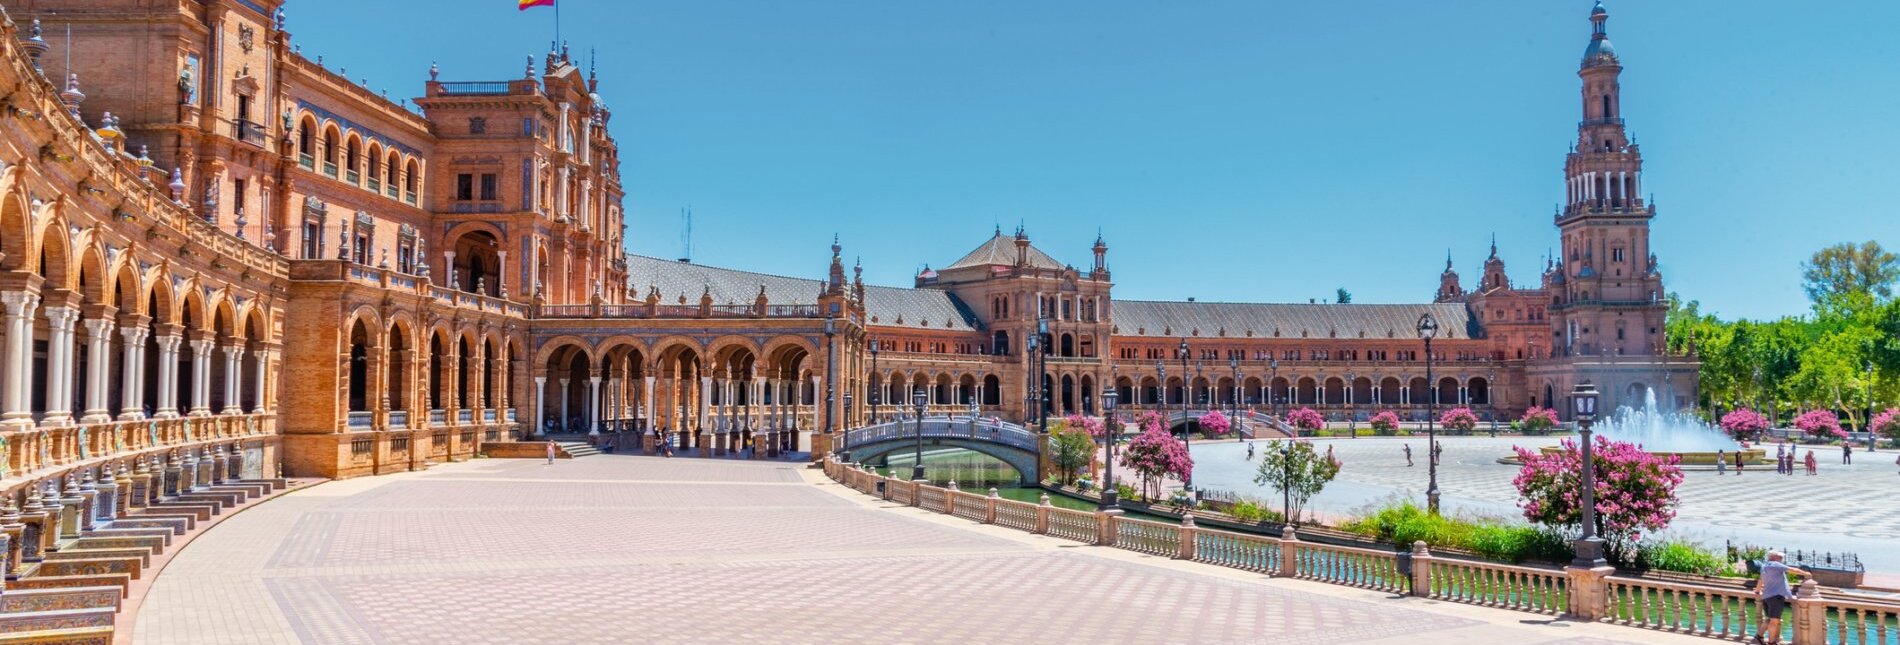 Plaza de Espana in Sevilla